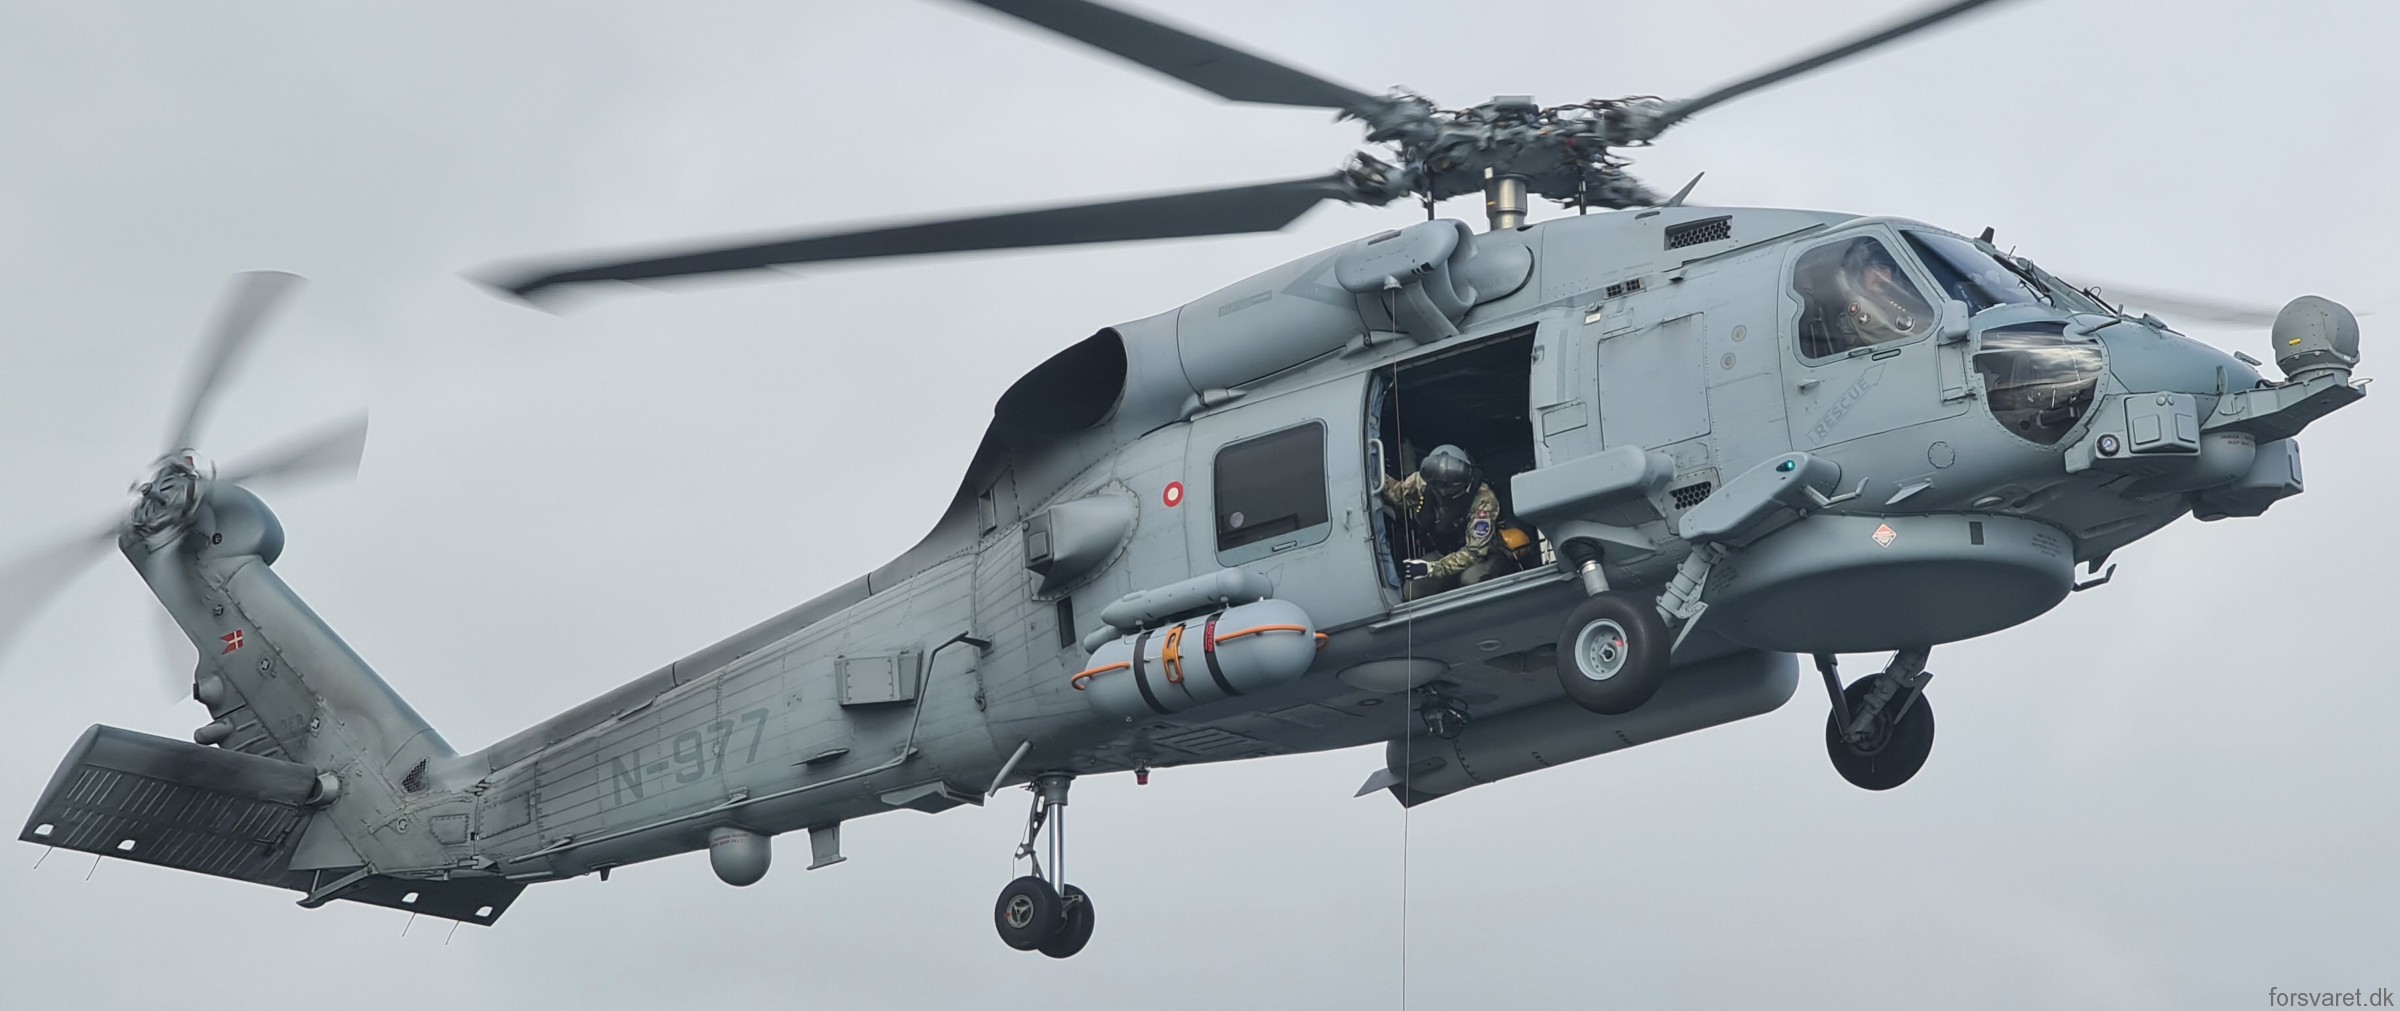 mh-60r seahawk royal danish navy air force flyvevåbnet kongelige danske marine sikorsky helicopter 723 eskadrille squadron karup 27